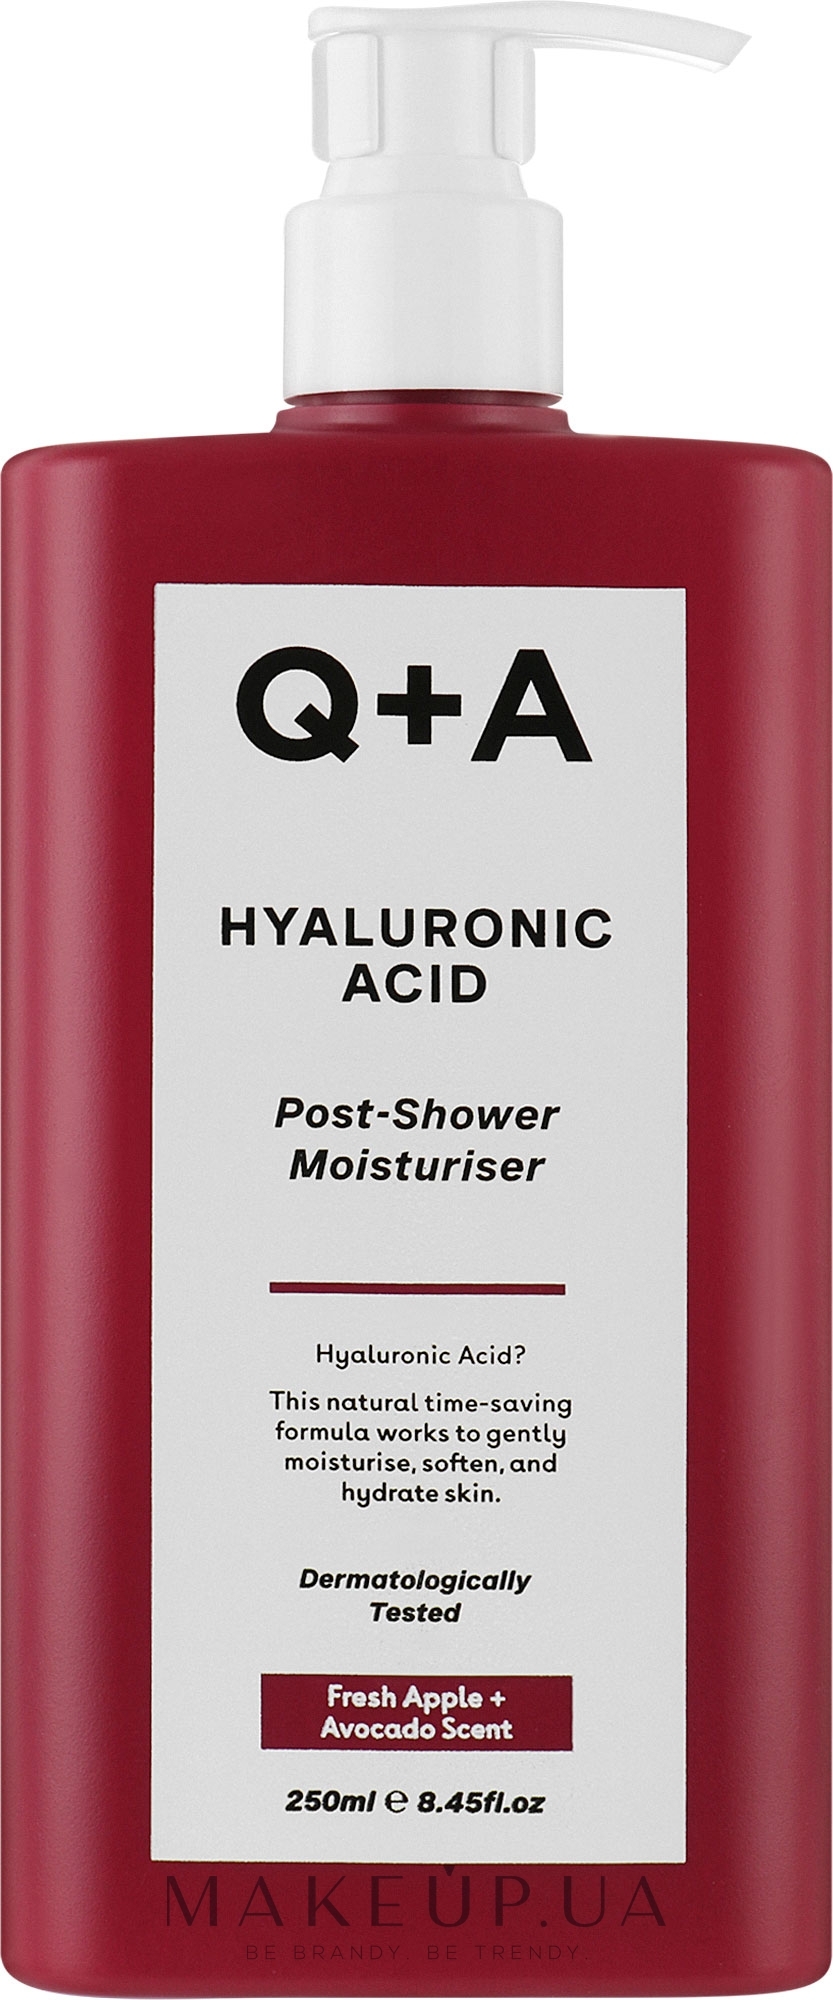 Увлажняющий крем после душа с гиалуроновой кислотой - Q+A Hyaluronic Acid Post-Shower Moisturiser — фото 250ml